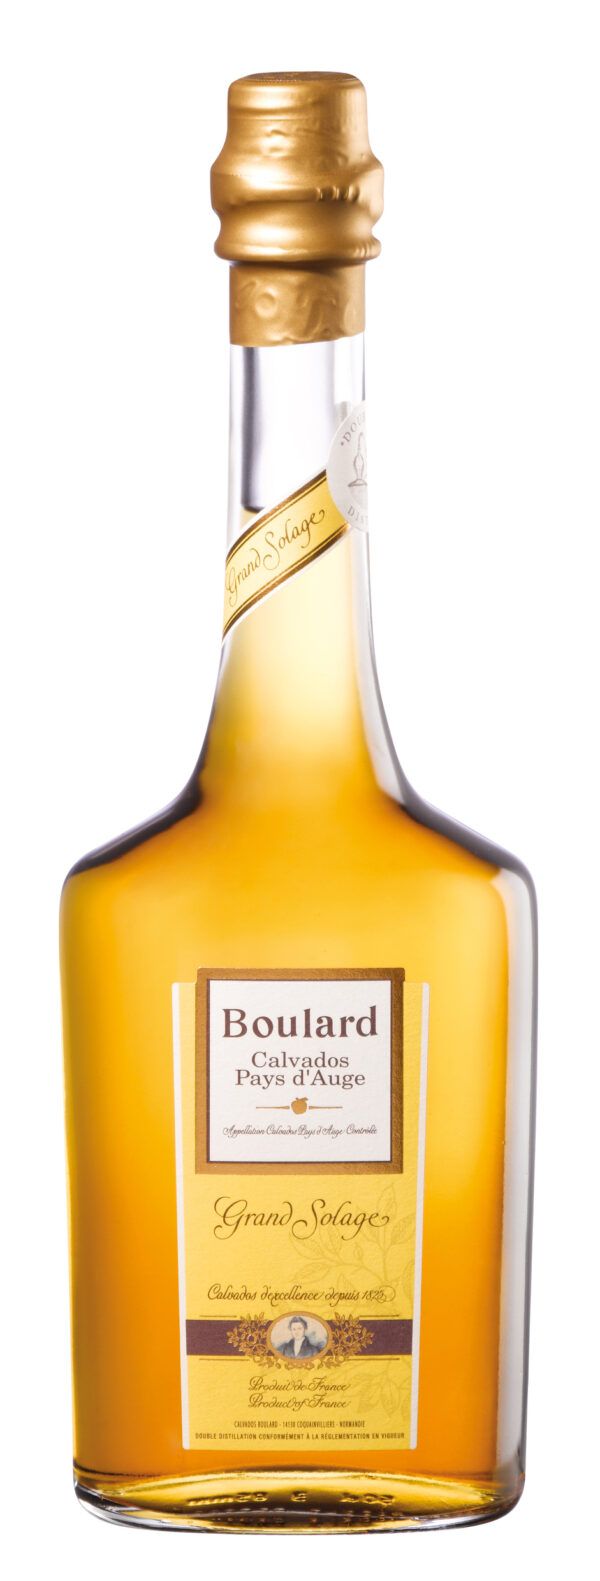 Boulard Grand Solage Calvados